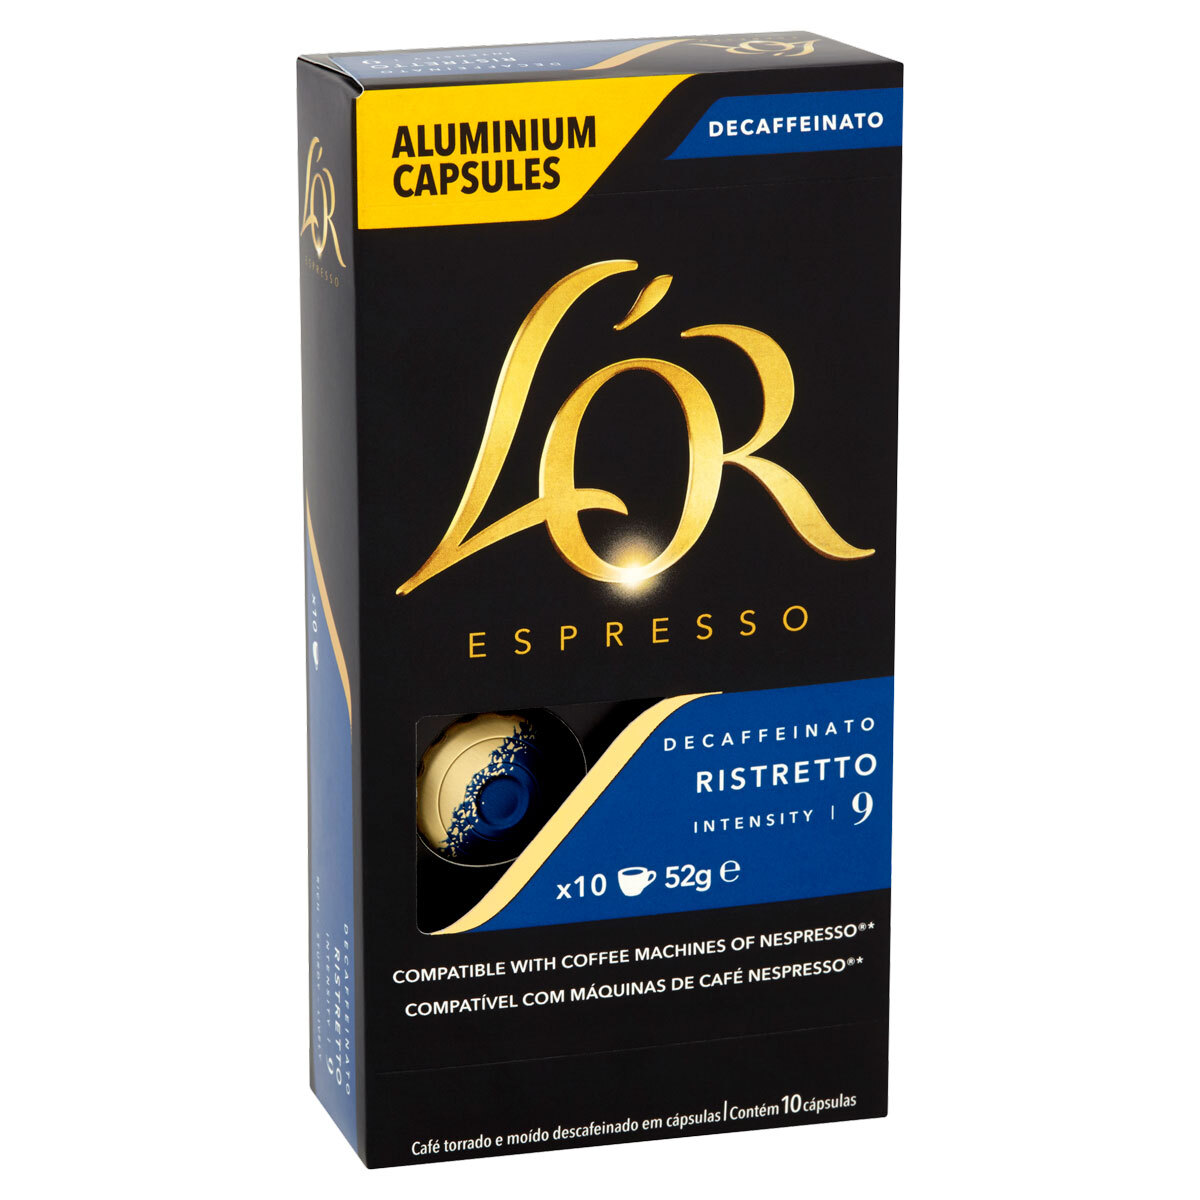 Decaffeinato L'OR Espresso pour Tassimo® 